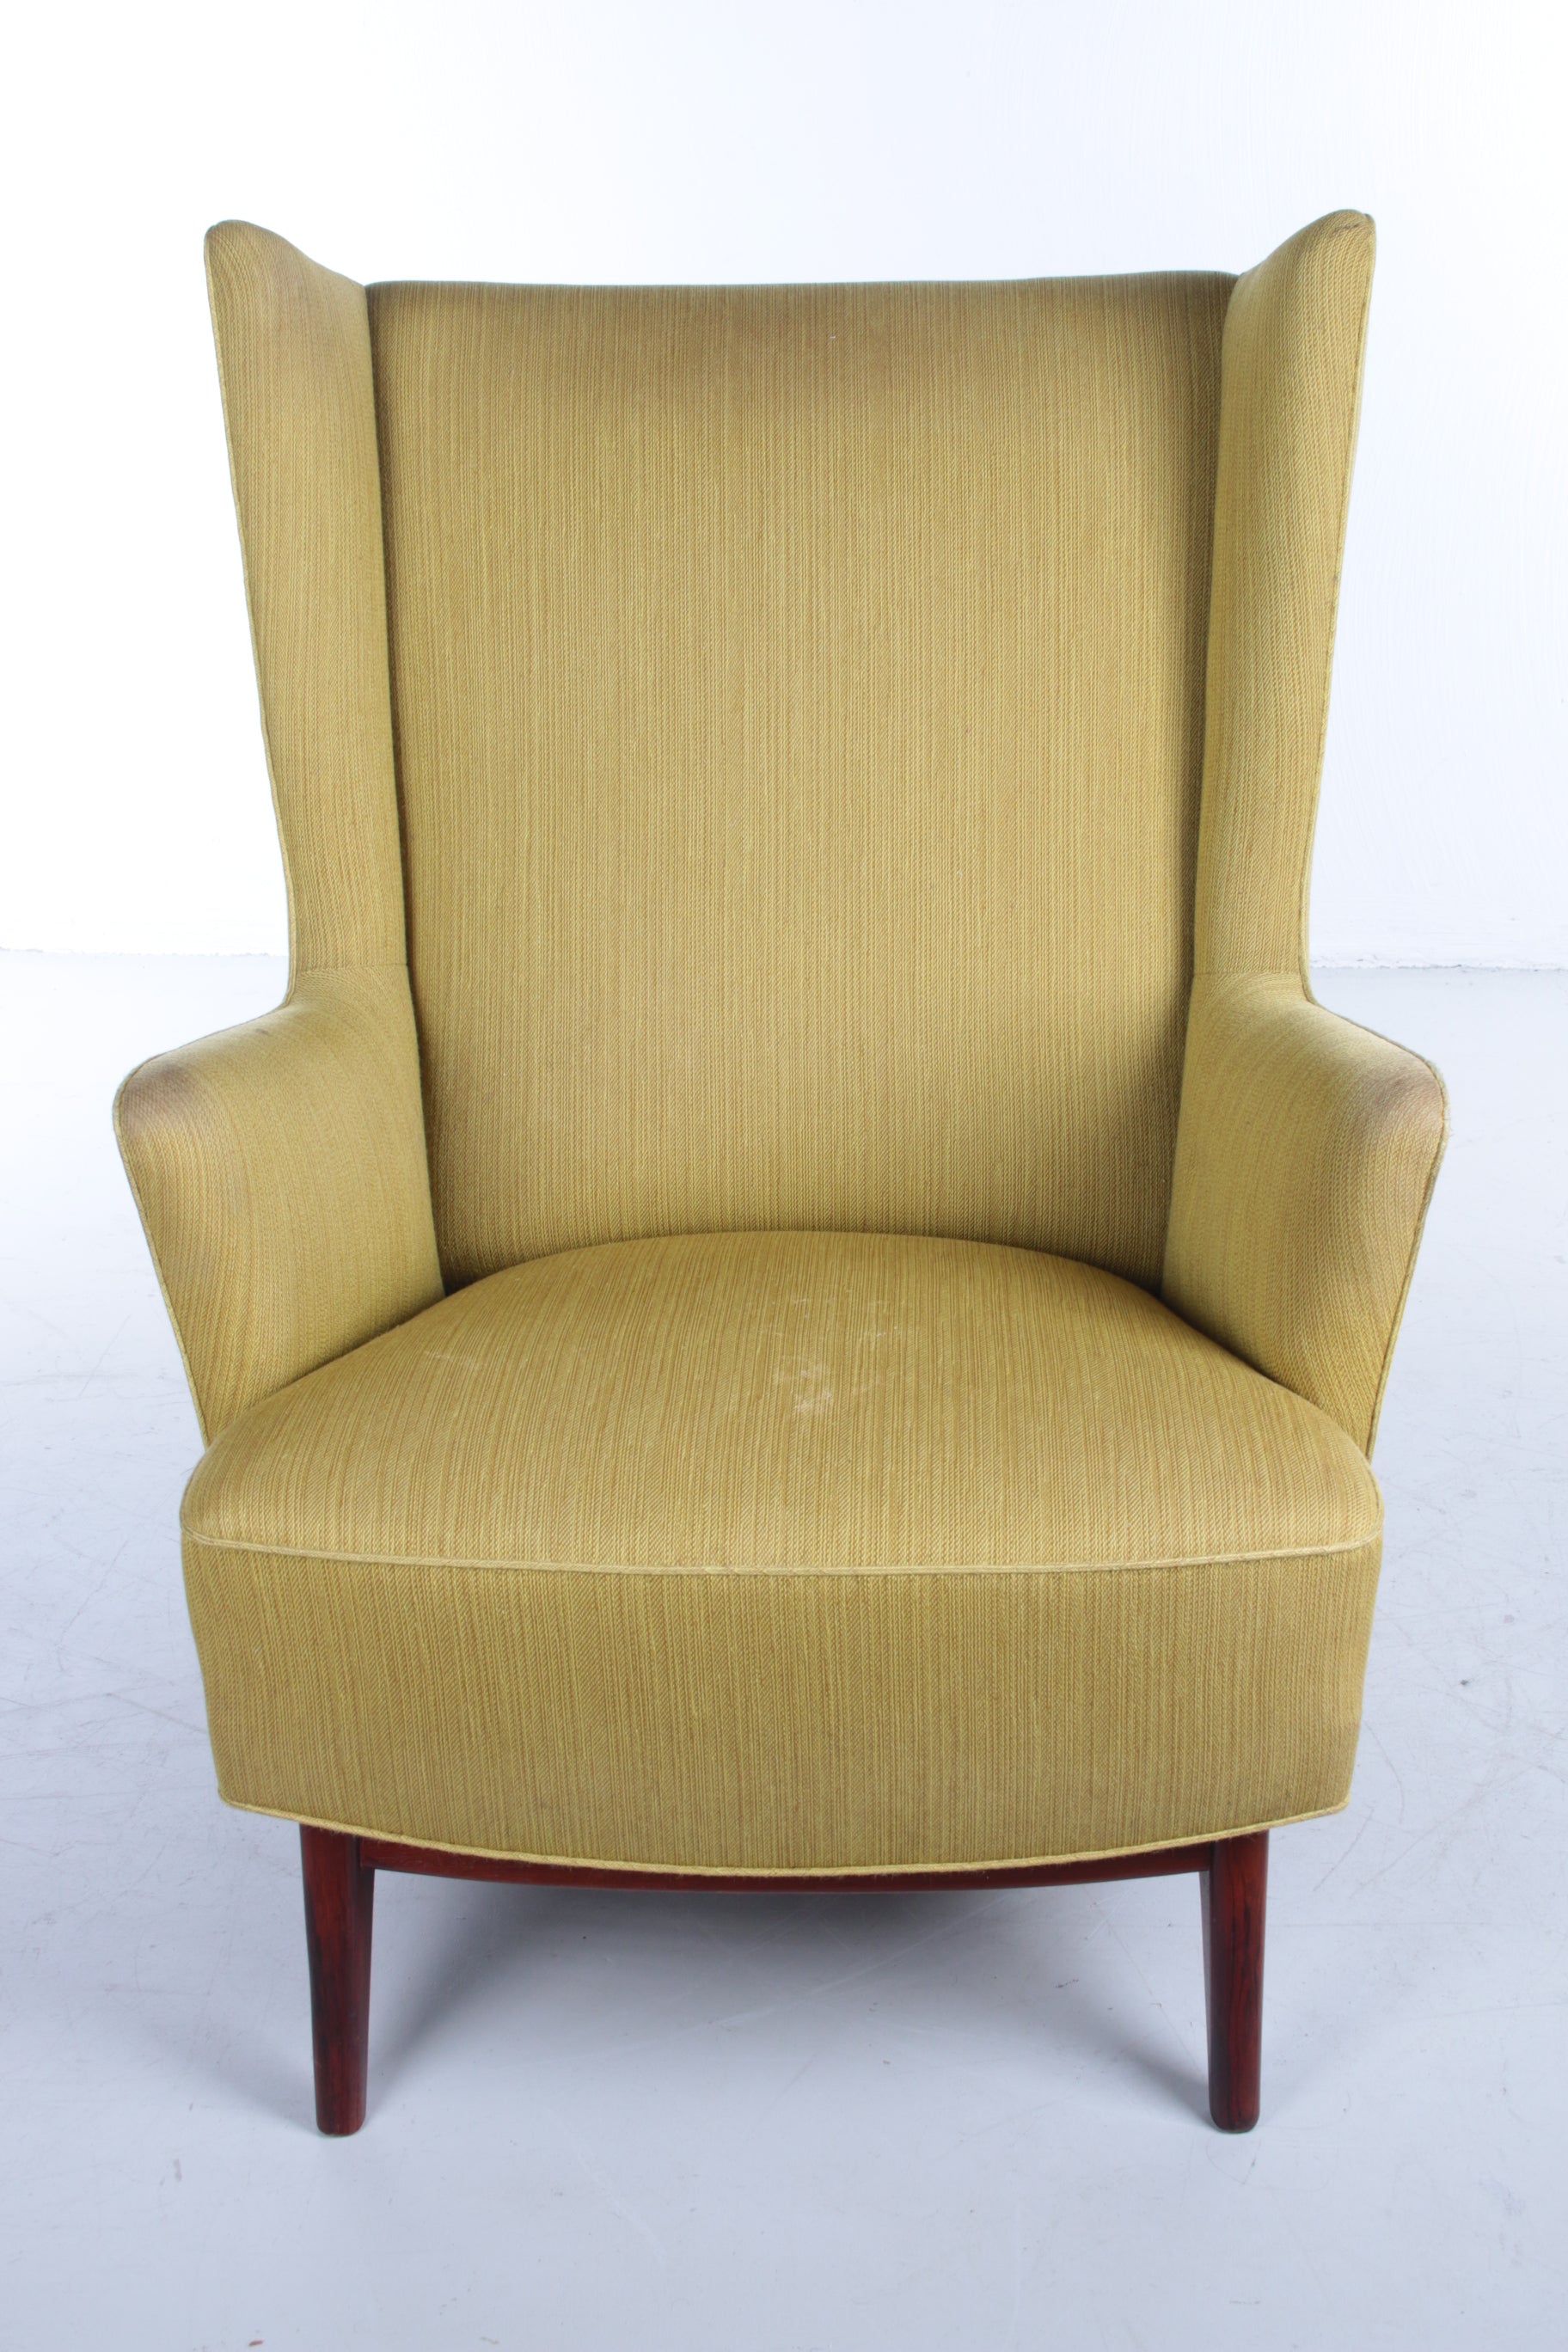 Deense fauteuil met pallisander houten onderstel mosgroen voorkant